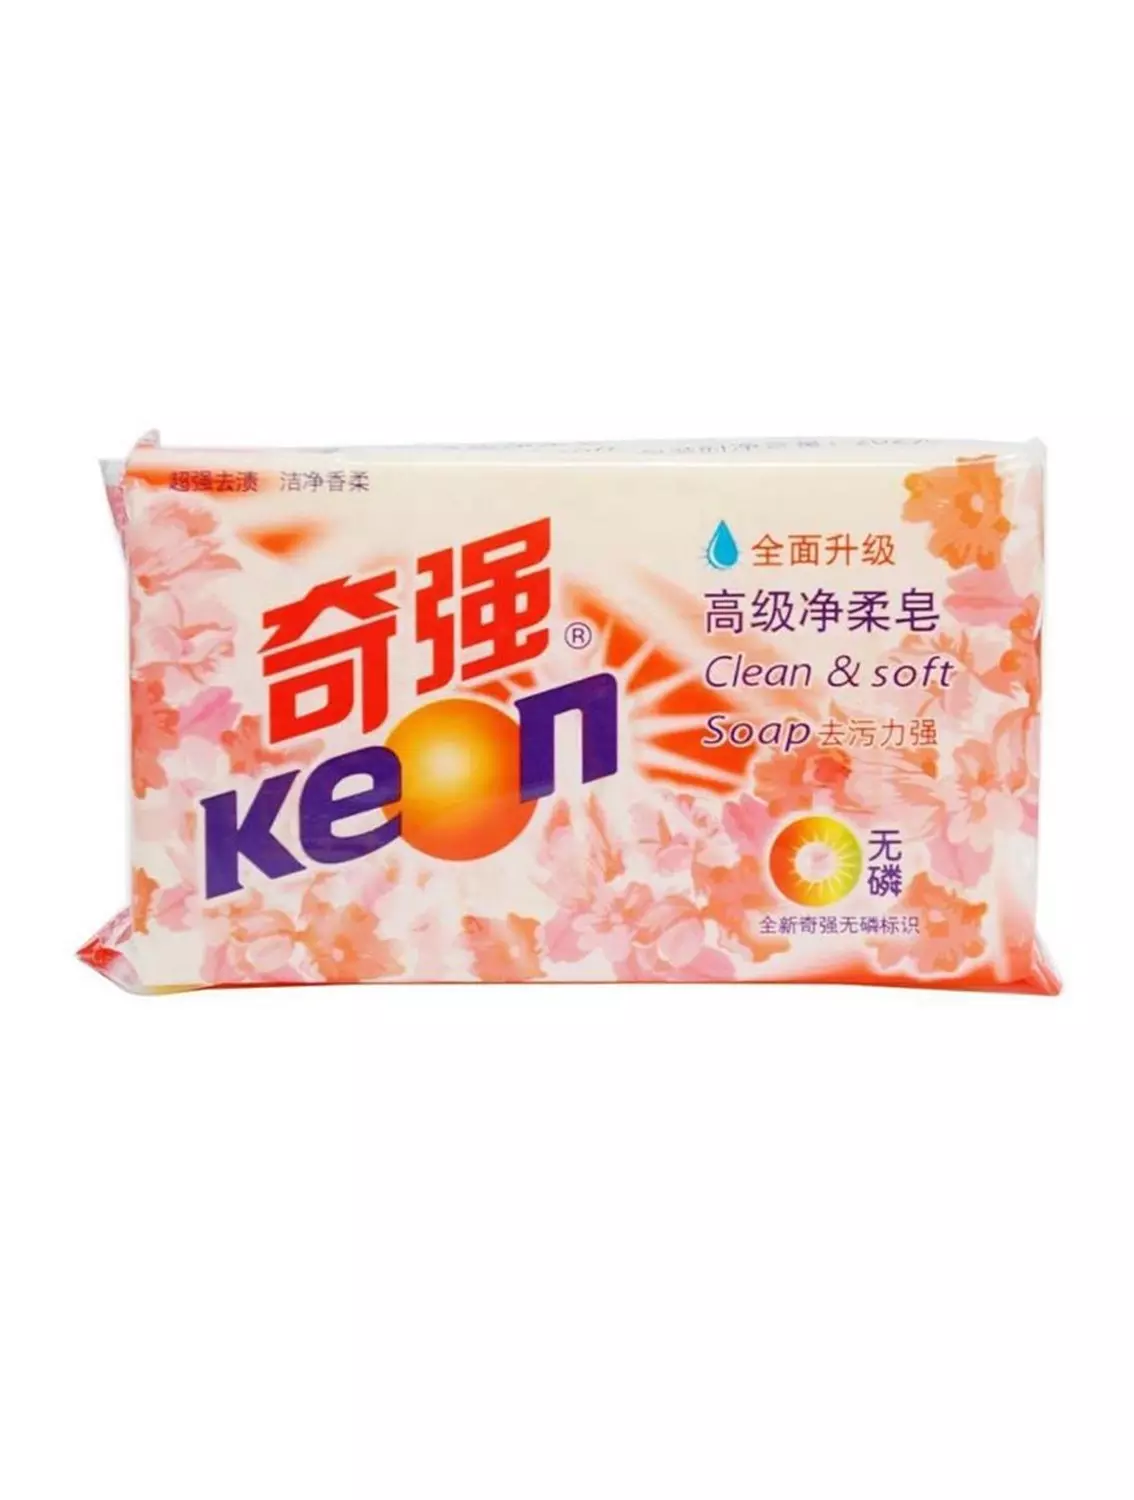 Мыло хозяйственное KEON для стирки эффект кипячения аромат Лилия 228гр